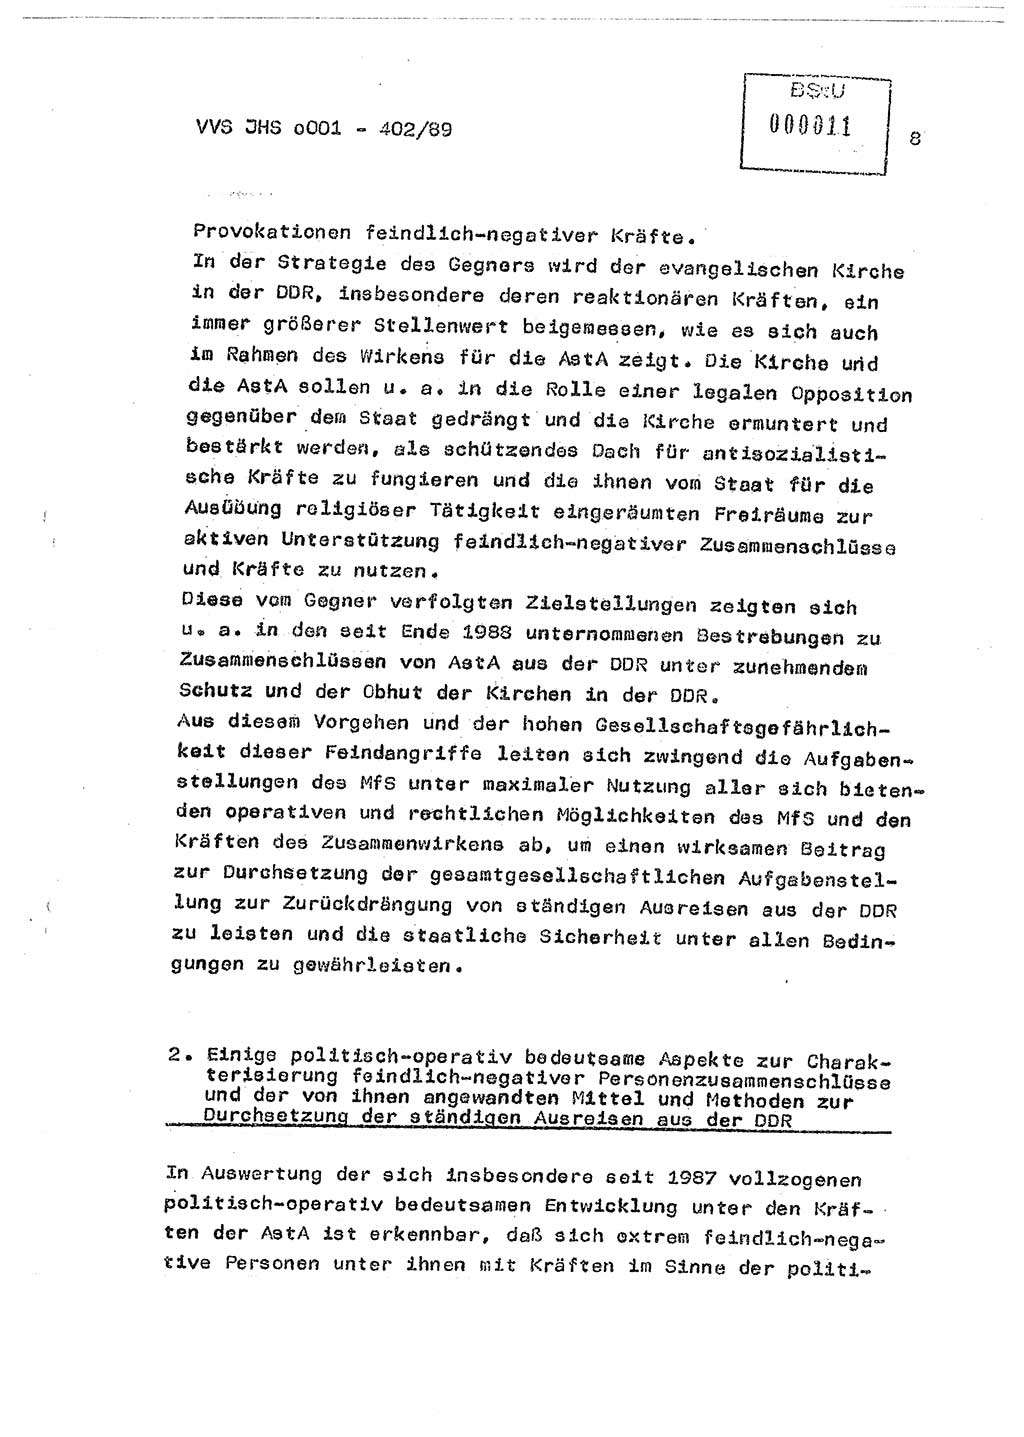 Diplomarbeit Major Günter Müller (HA Ⅸ/9), Ministerium für Staatssicherheit (MfS) [Deutsche Demokratische Republik (DDR)], Juristische Hochschule (JHS), Vertrauliche Verschlußsache (VVS) o001-402/89, Potsdam 1989, Seite 8 (Dipl.-Arb. MfS DDR JHS VVS o001-402/89 1989, S. 8)